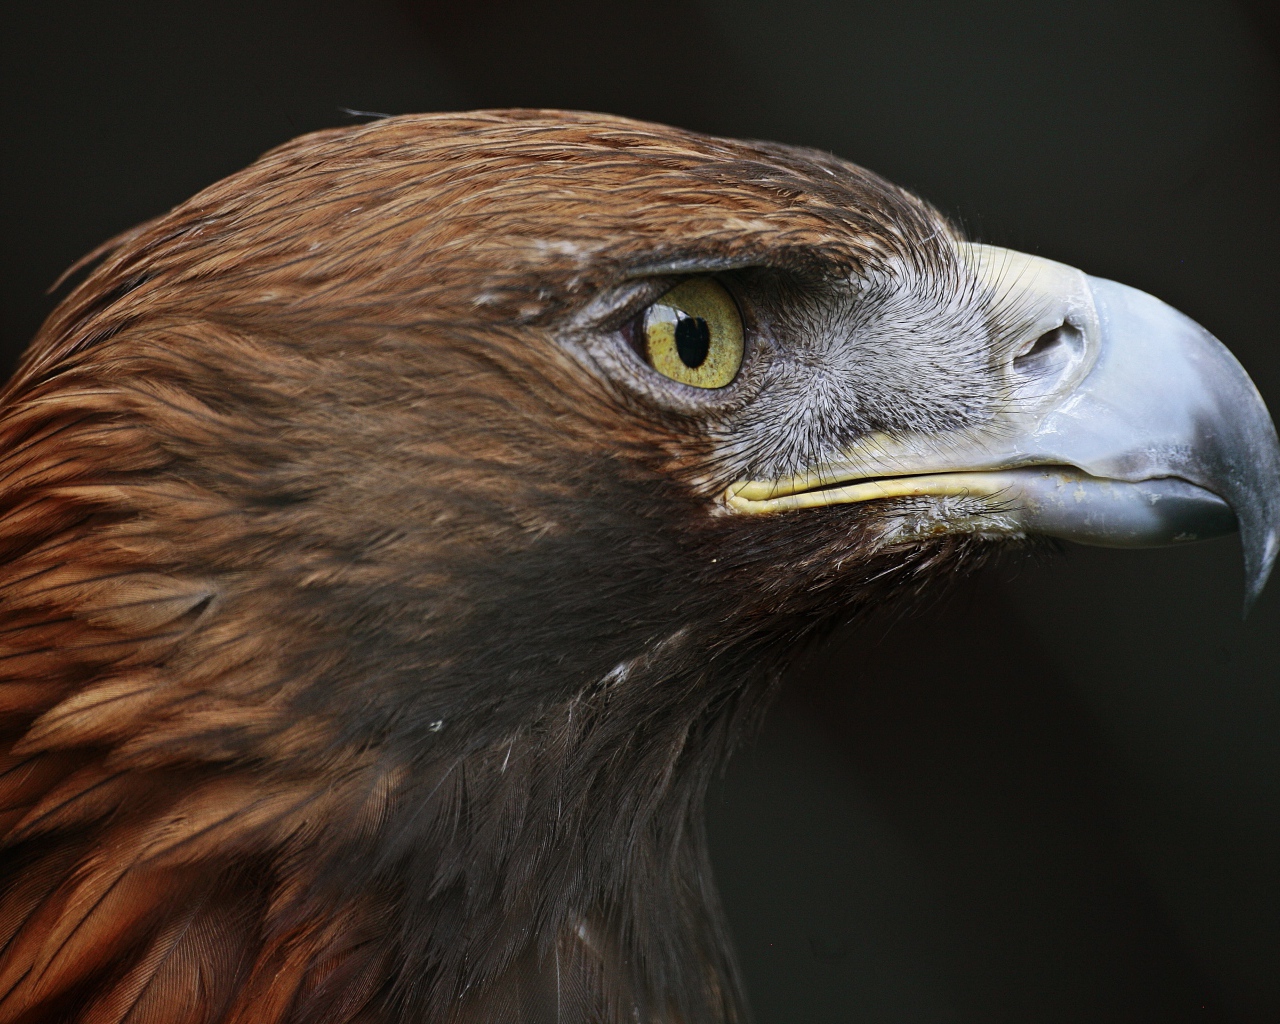 Close-up eagle head